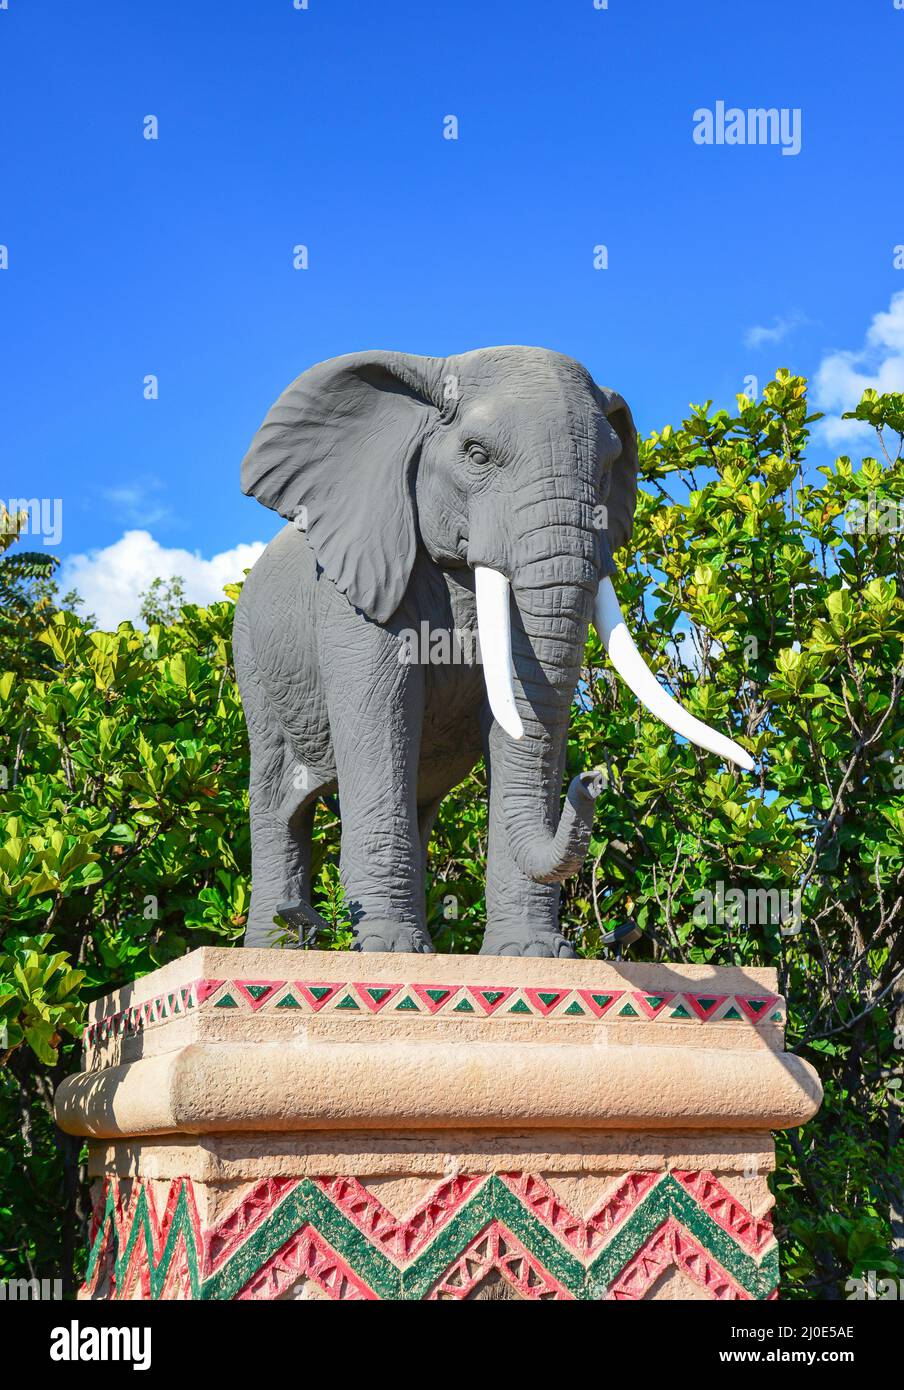 Statua di elefante sul ponte del tempo, Valle di onde, Sun City resort per vacanze Pilanesberg, nord ovest della provincia, Sud Africa Foto Stock